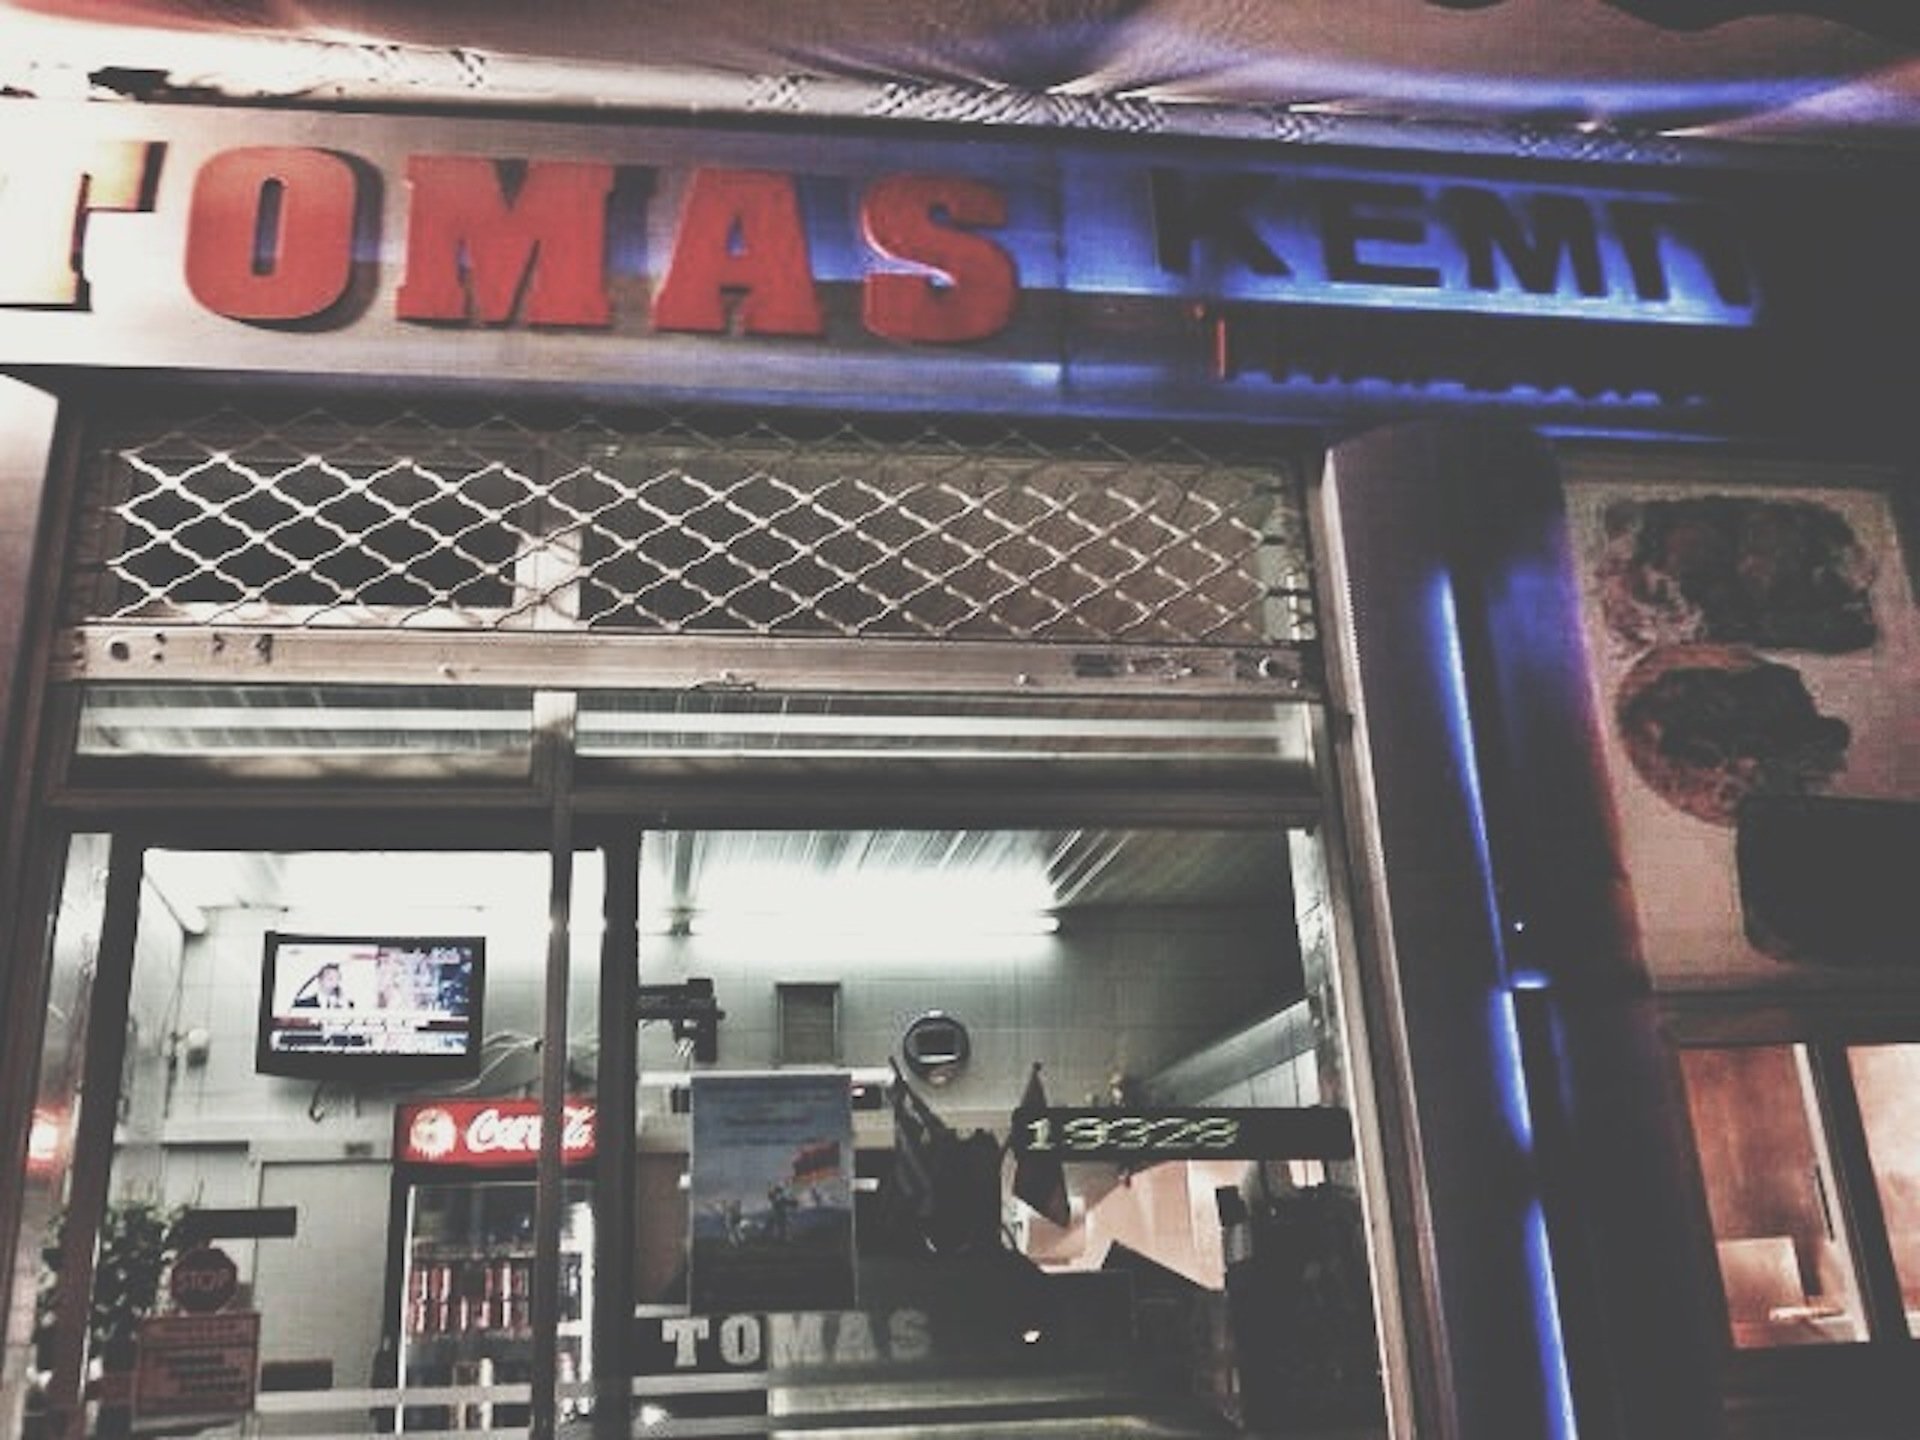 tomas-3.jpg